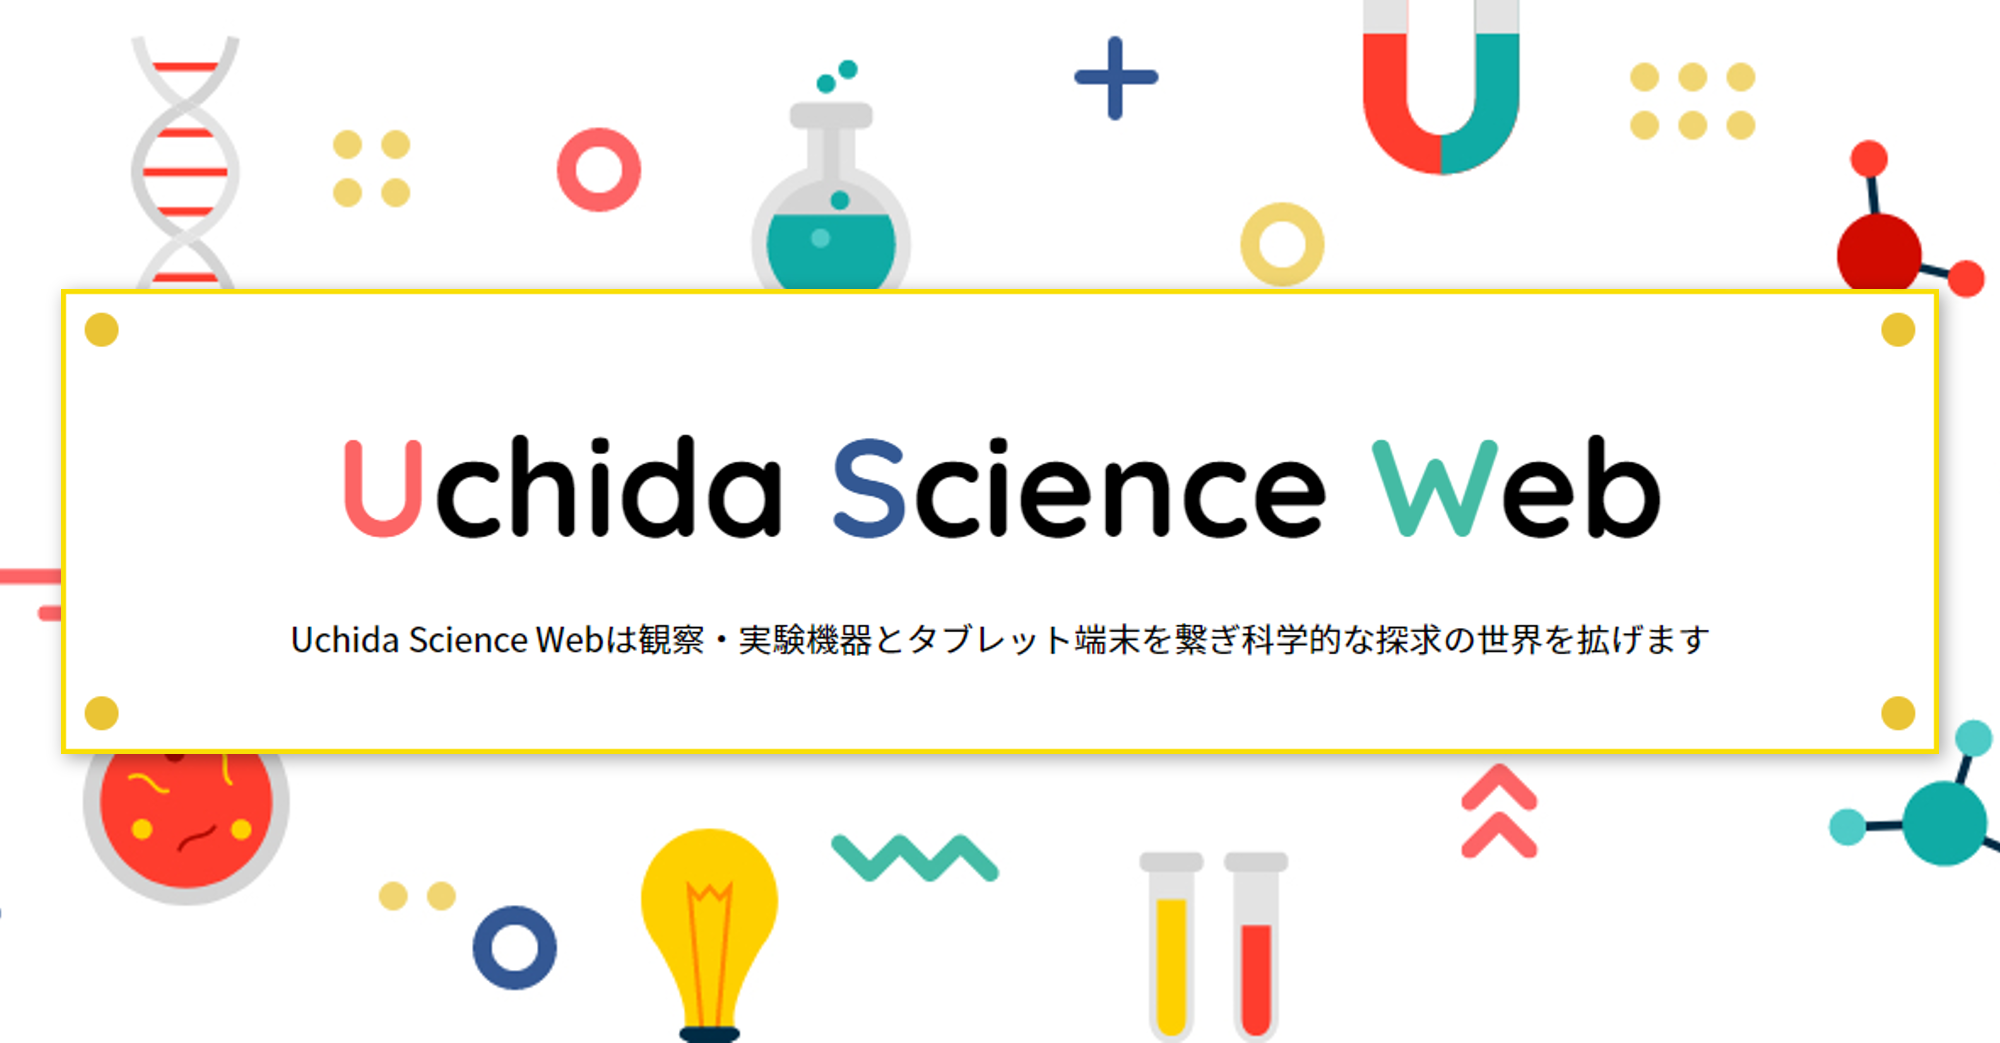 Uchida Science Web